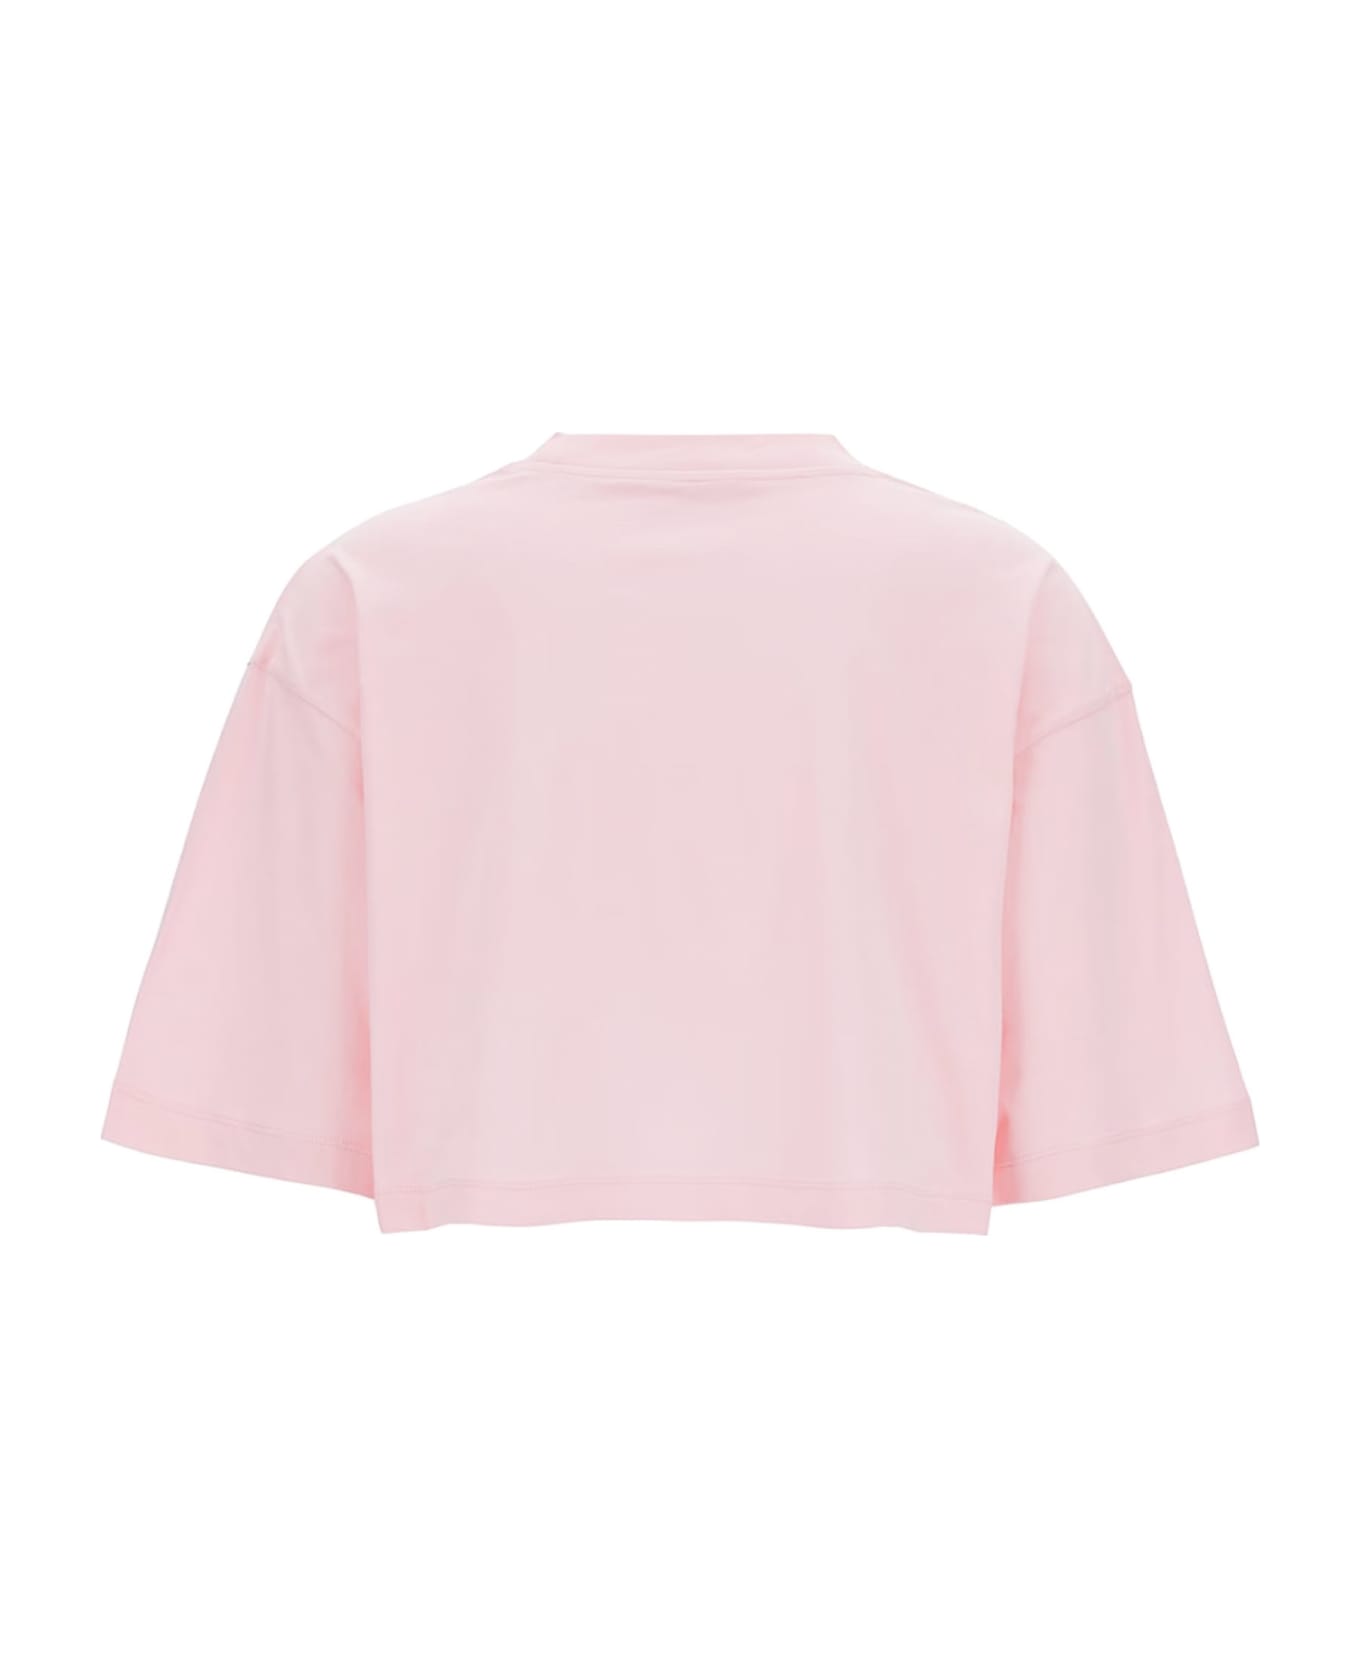 Marni Pink Organic Cotton Jersey T-shirt - Cinder rose トップス